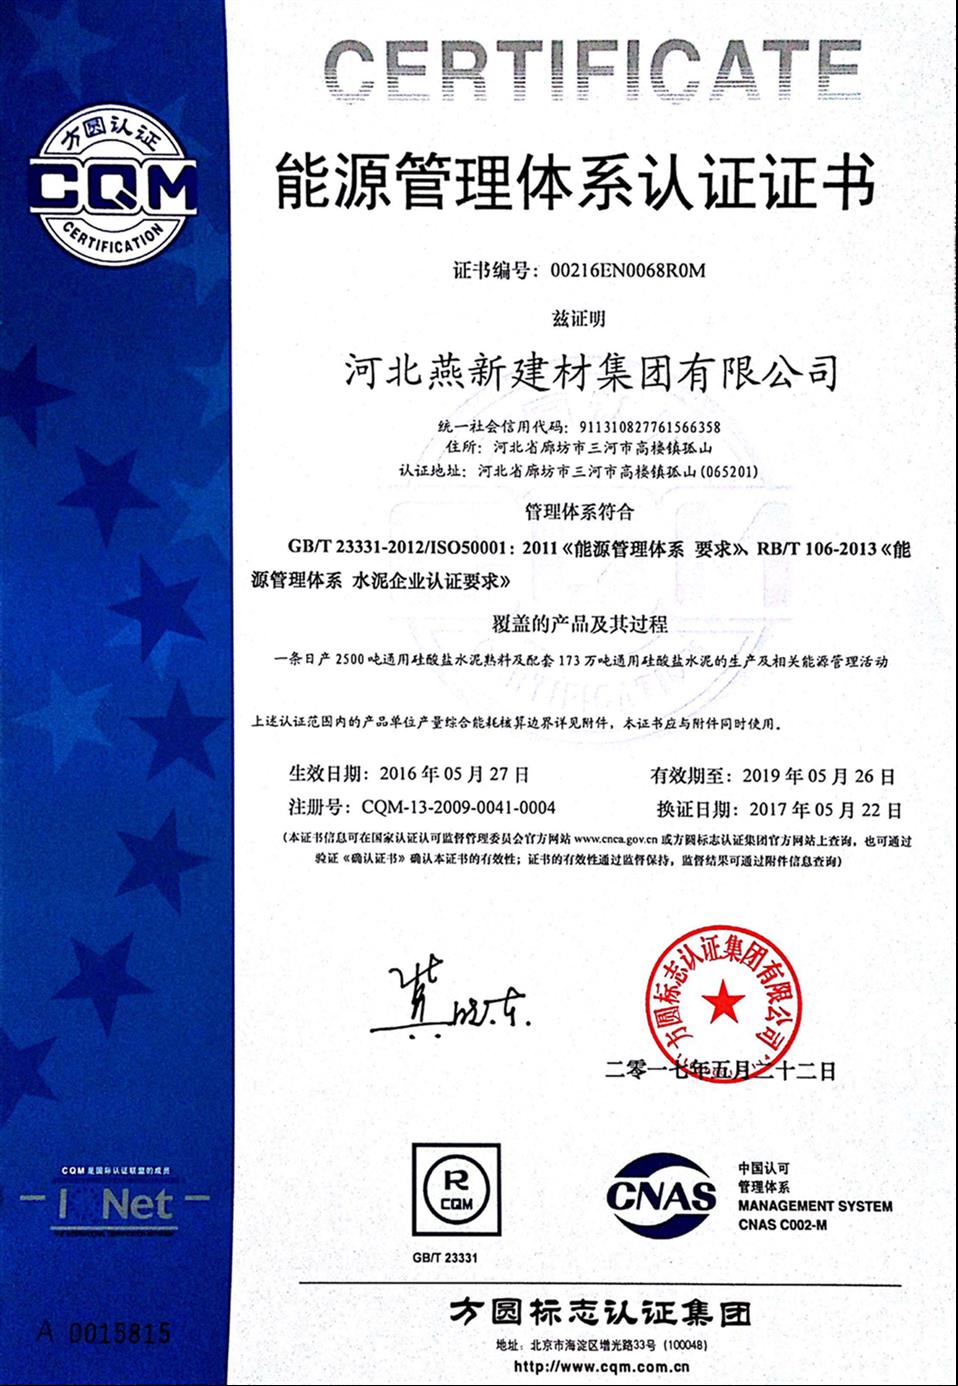 化工廠ISO50001能源管理體系認證